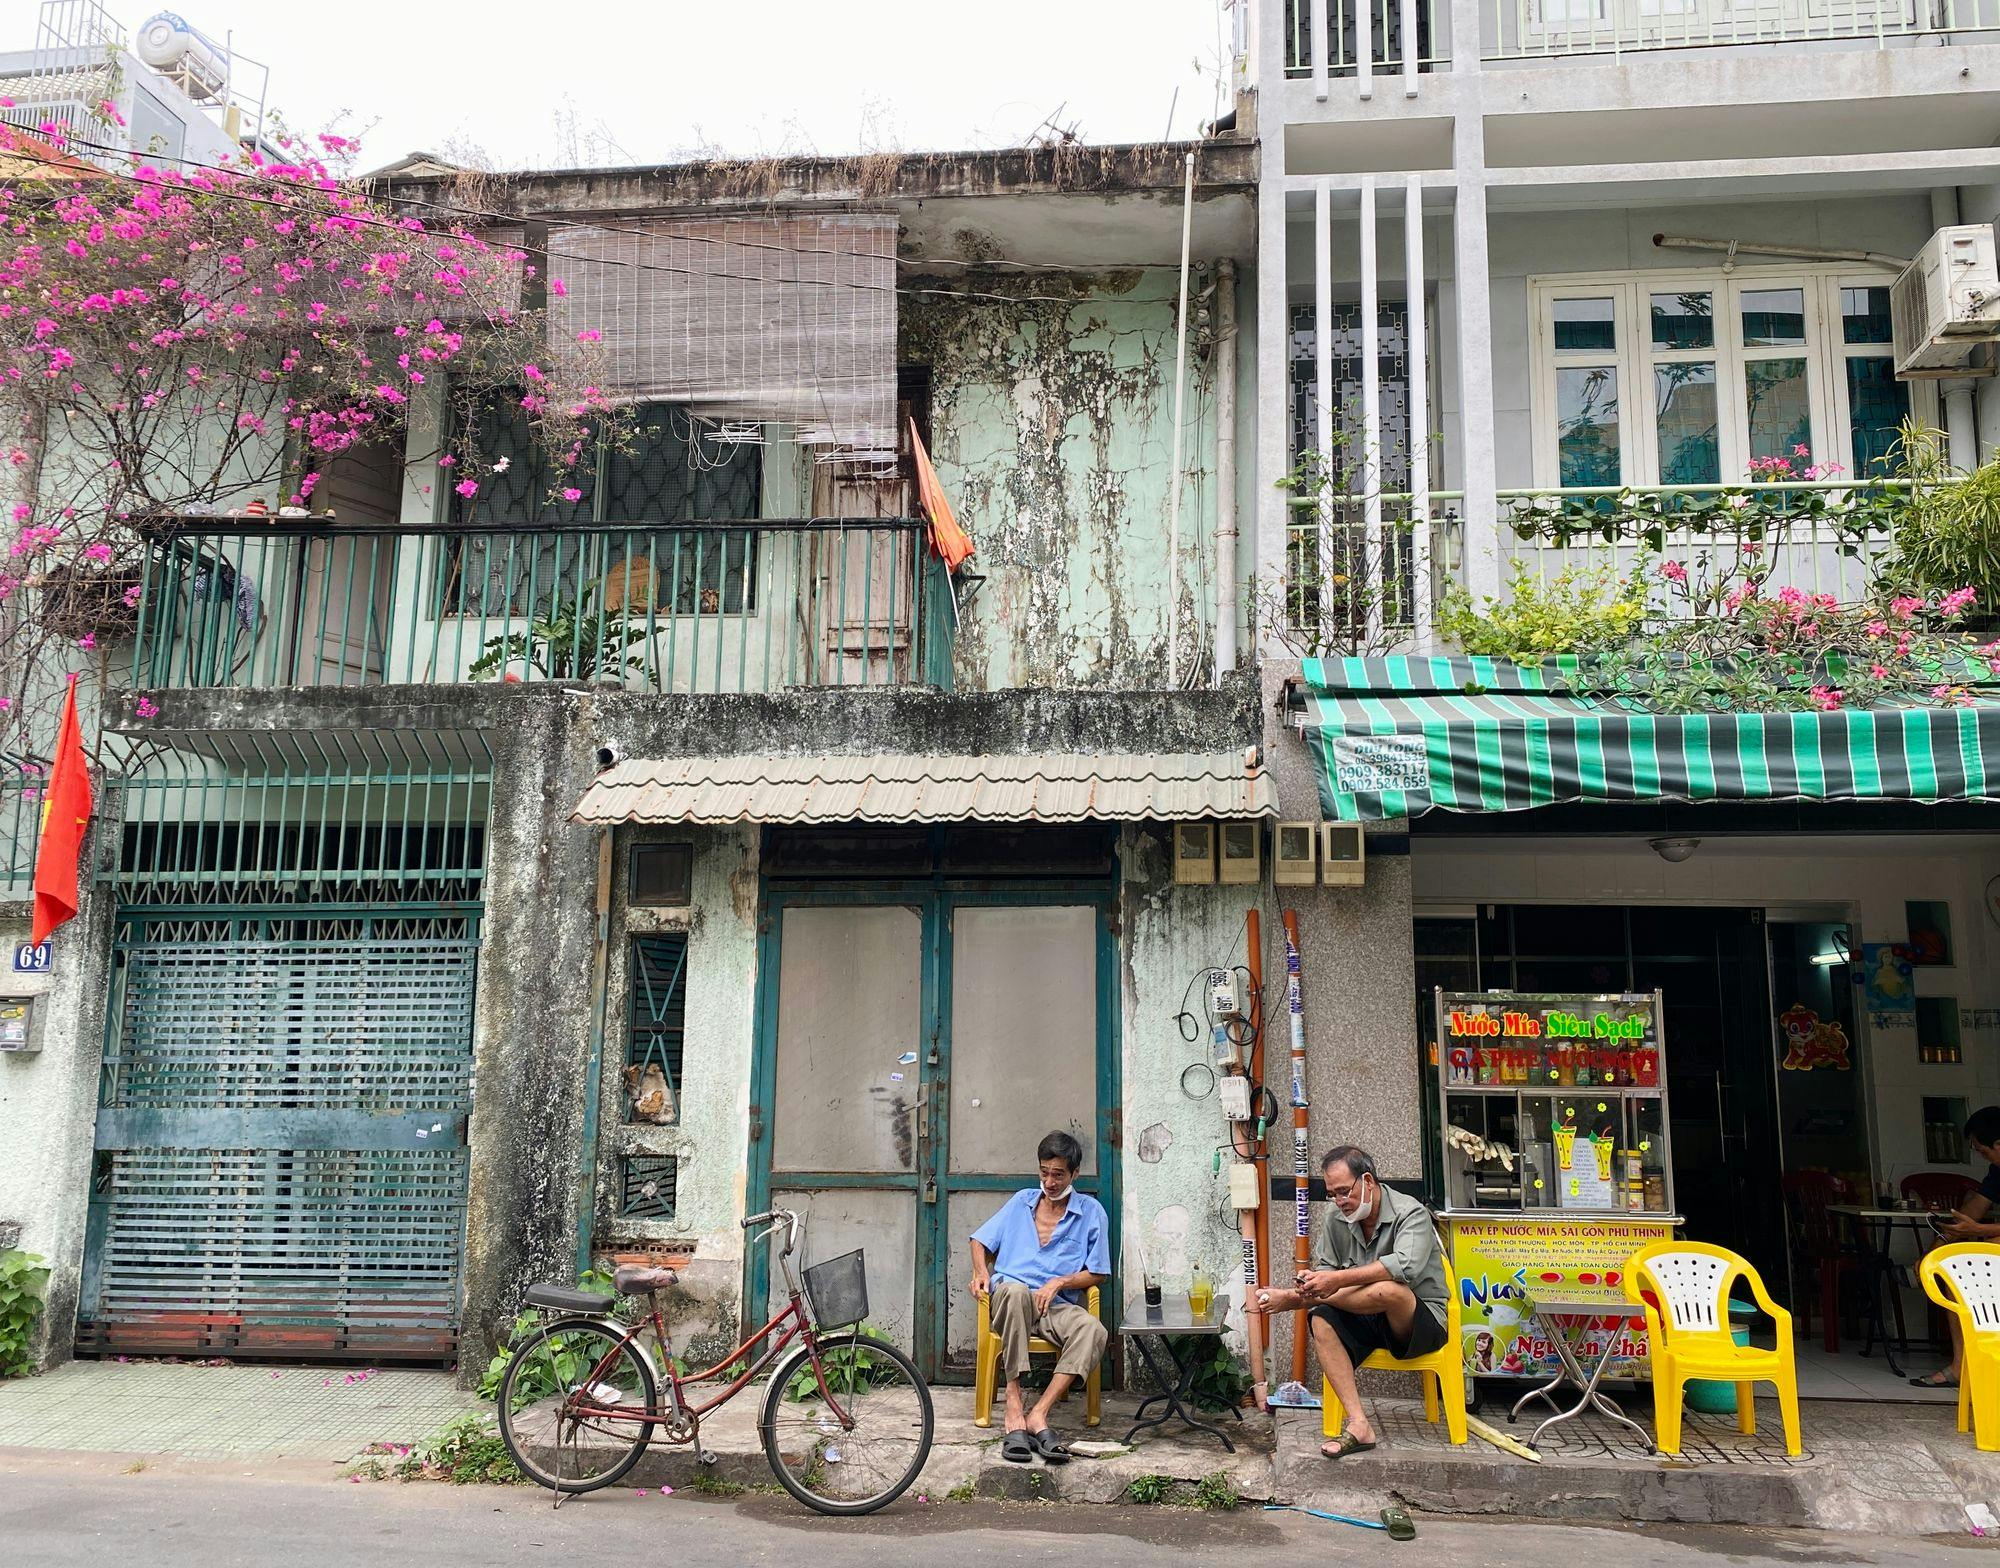 Bí mật trong hẻm Sài Gòn